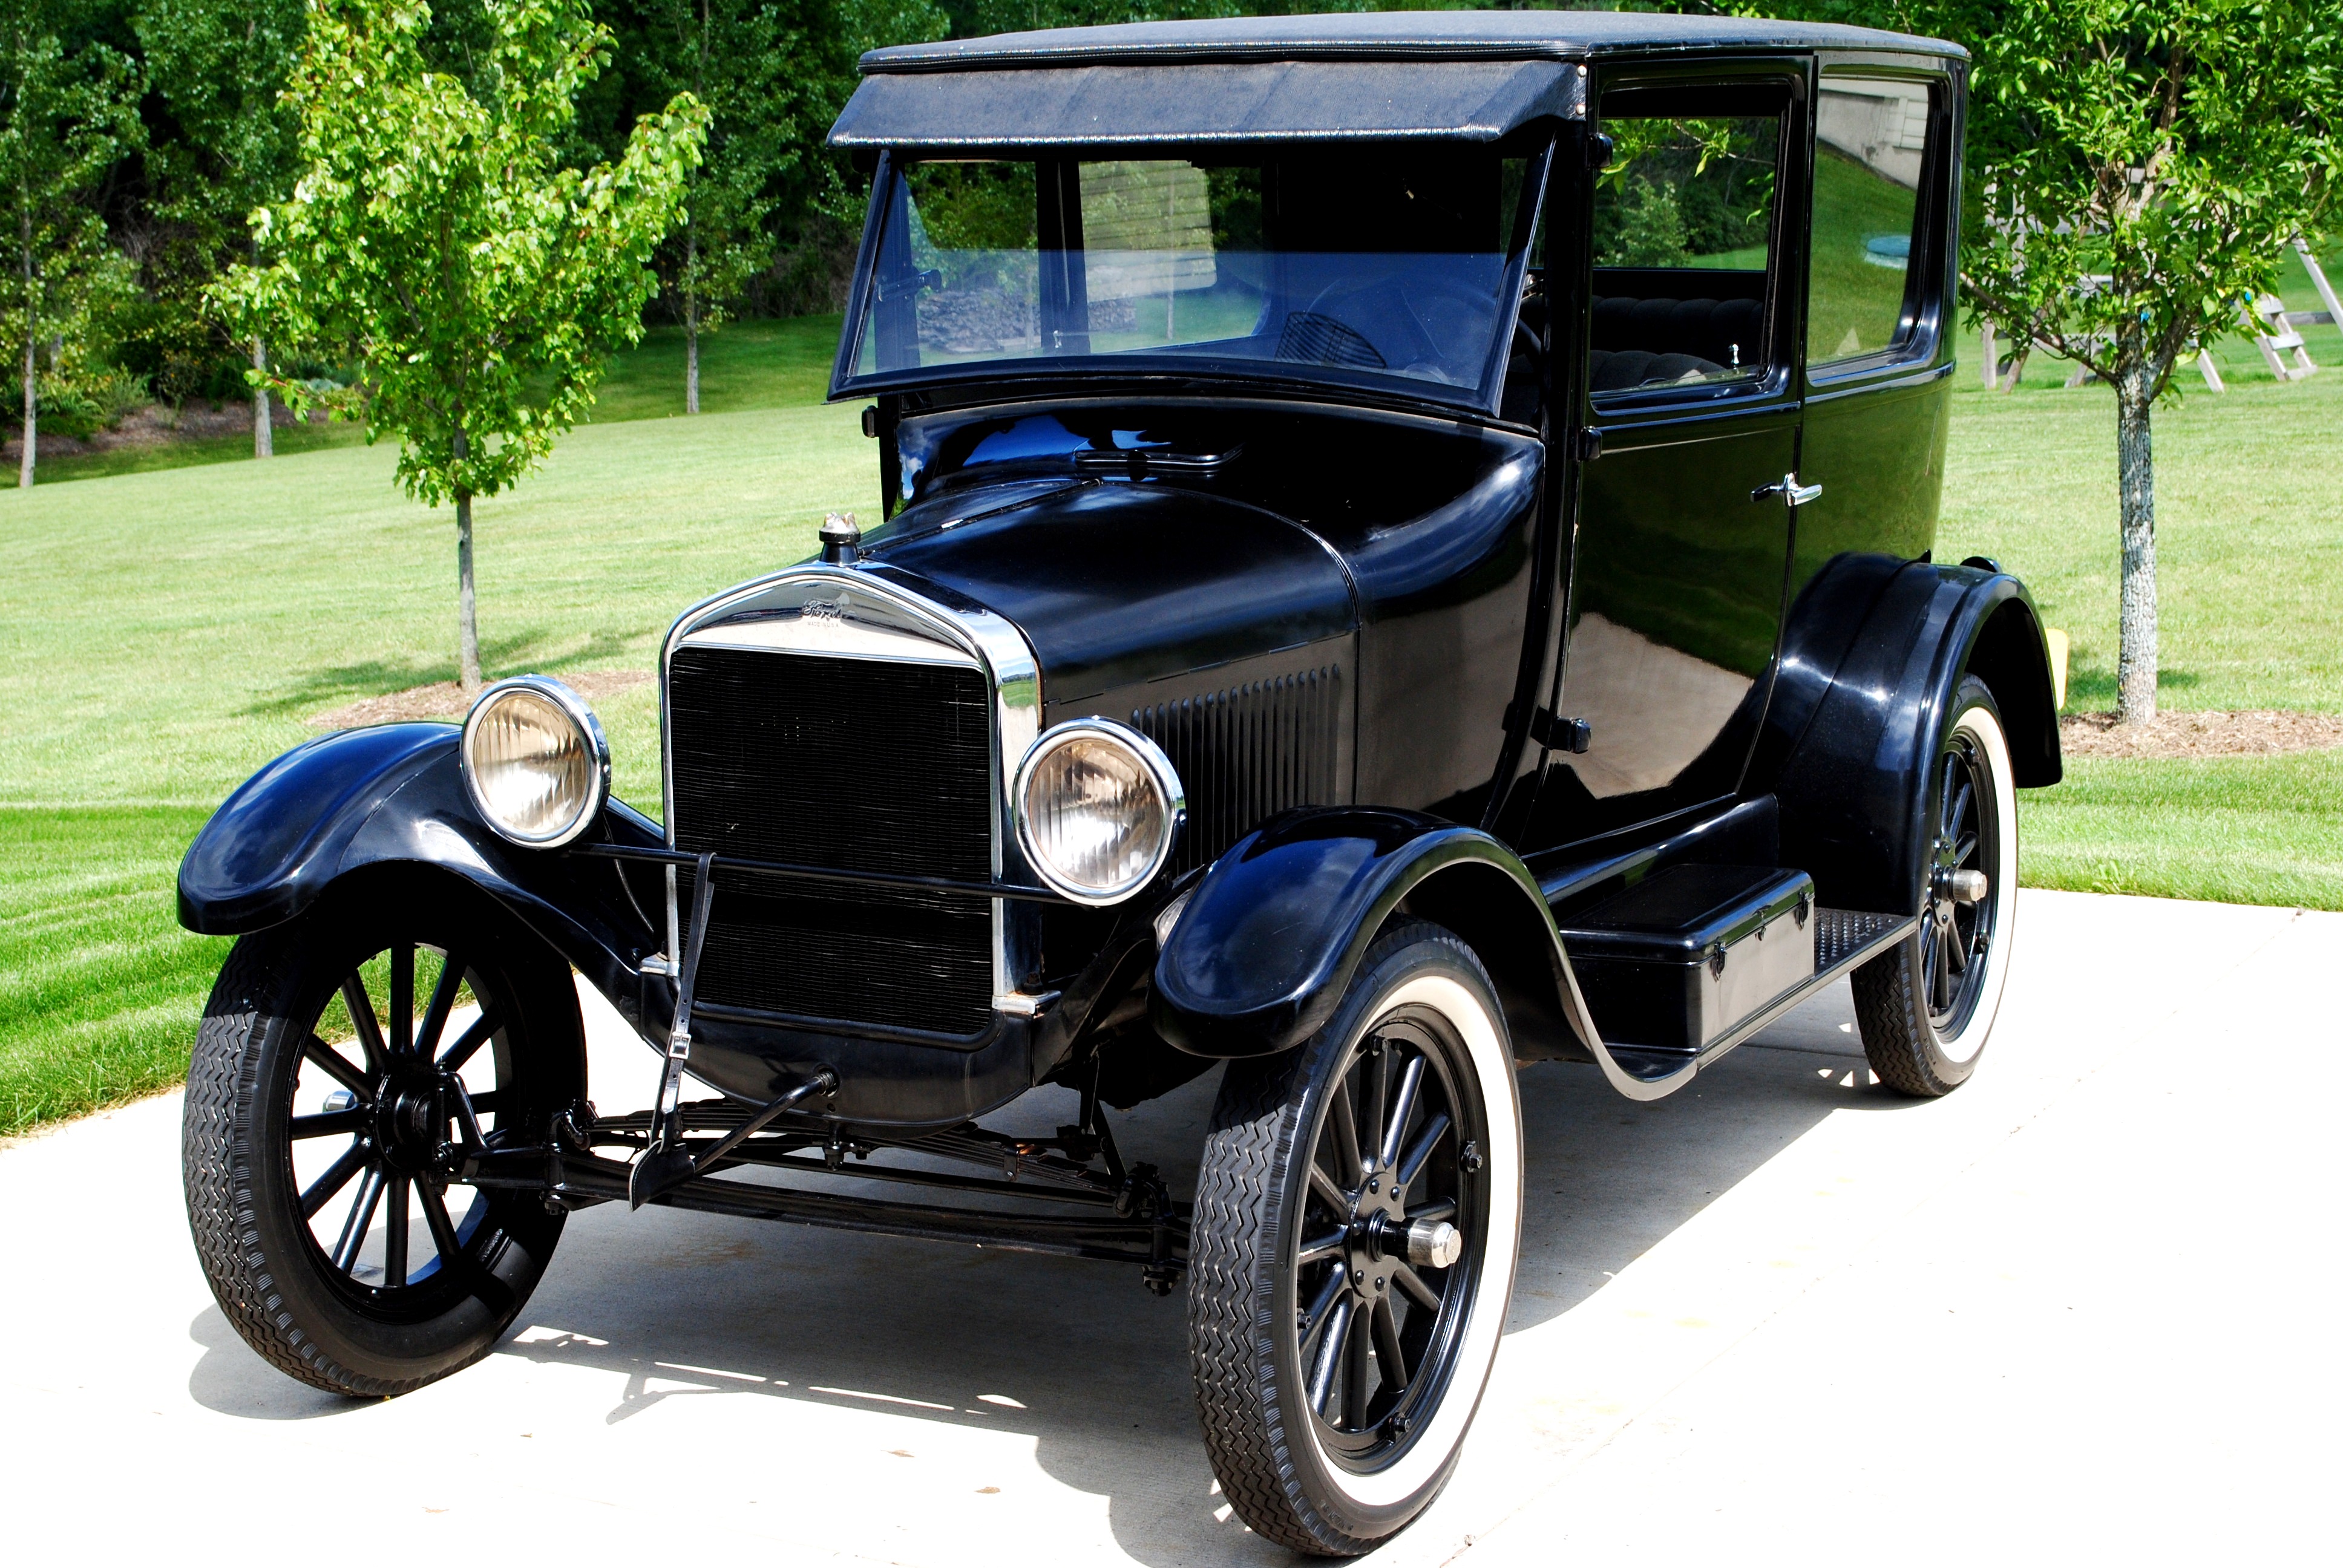 Первые машины на автомате. Ford model t. Ford model t 1908 и 1927. «Ford model т» в 1908 г.